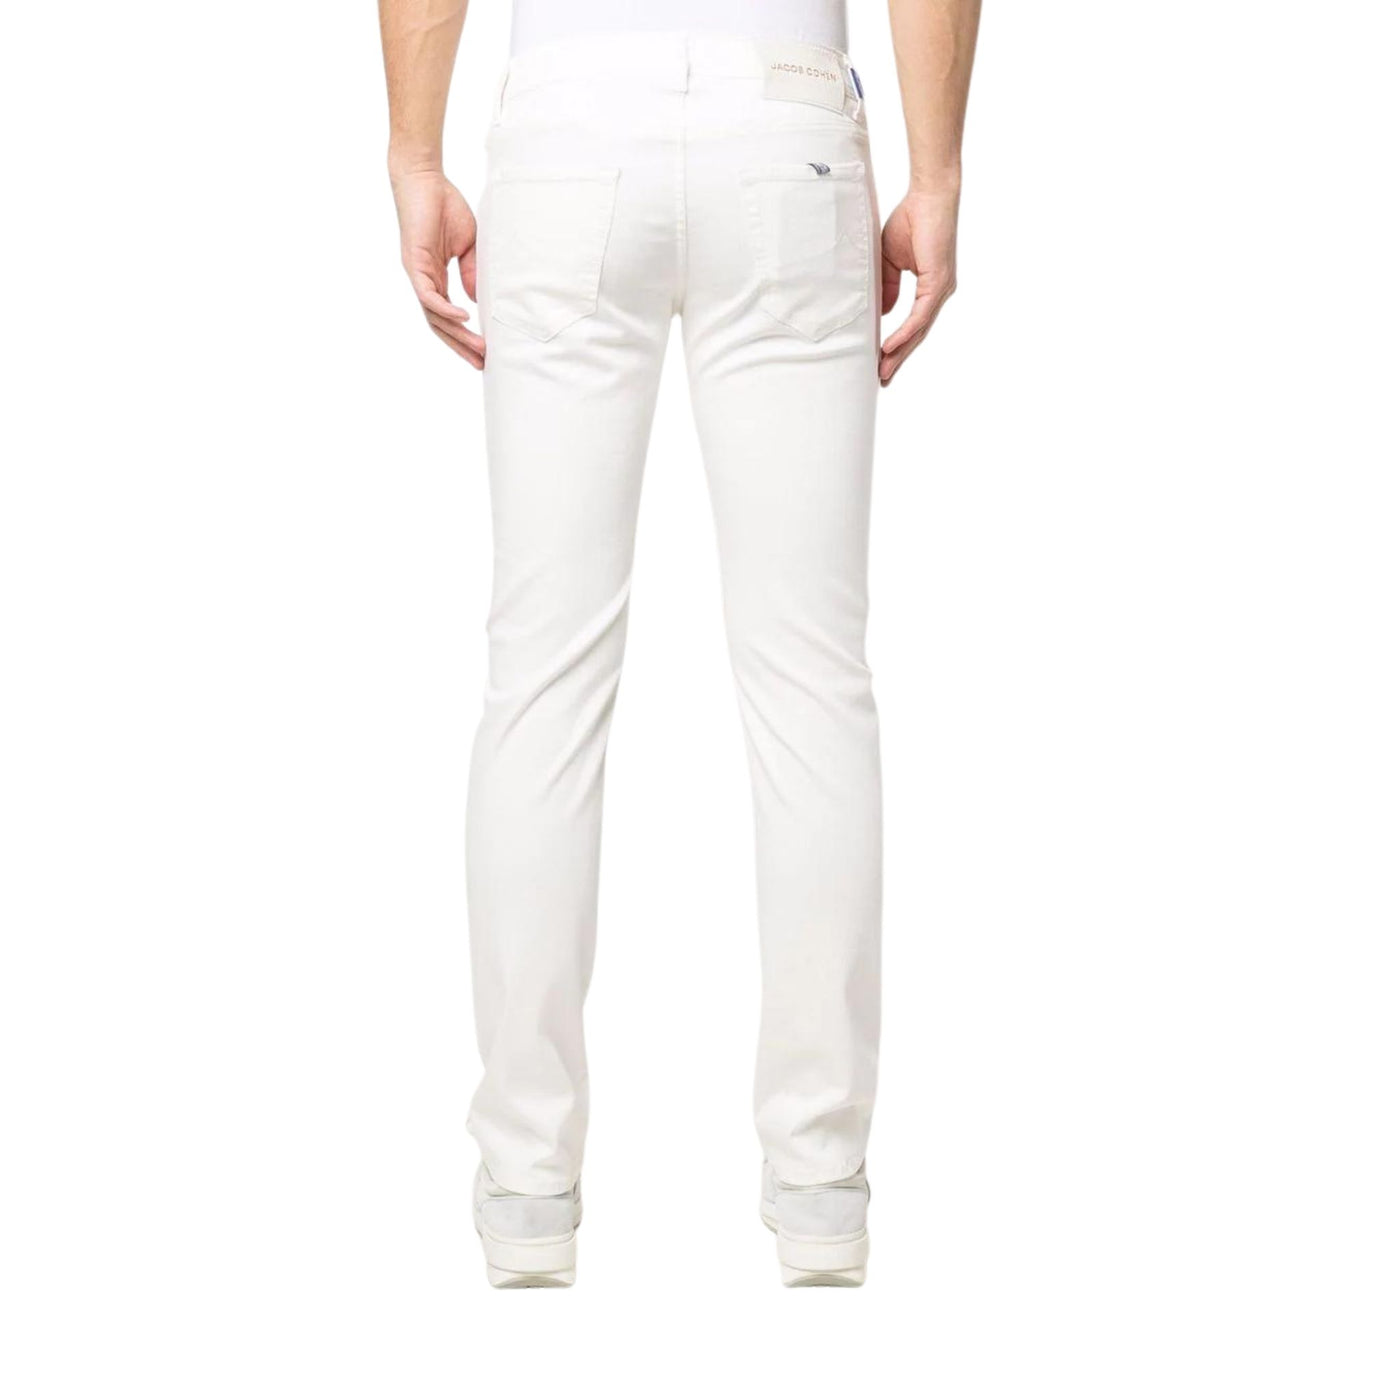 Pantalone da uomo bianco firmato Jacob Cohen su modello vista retro